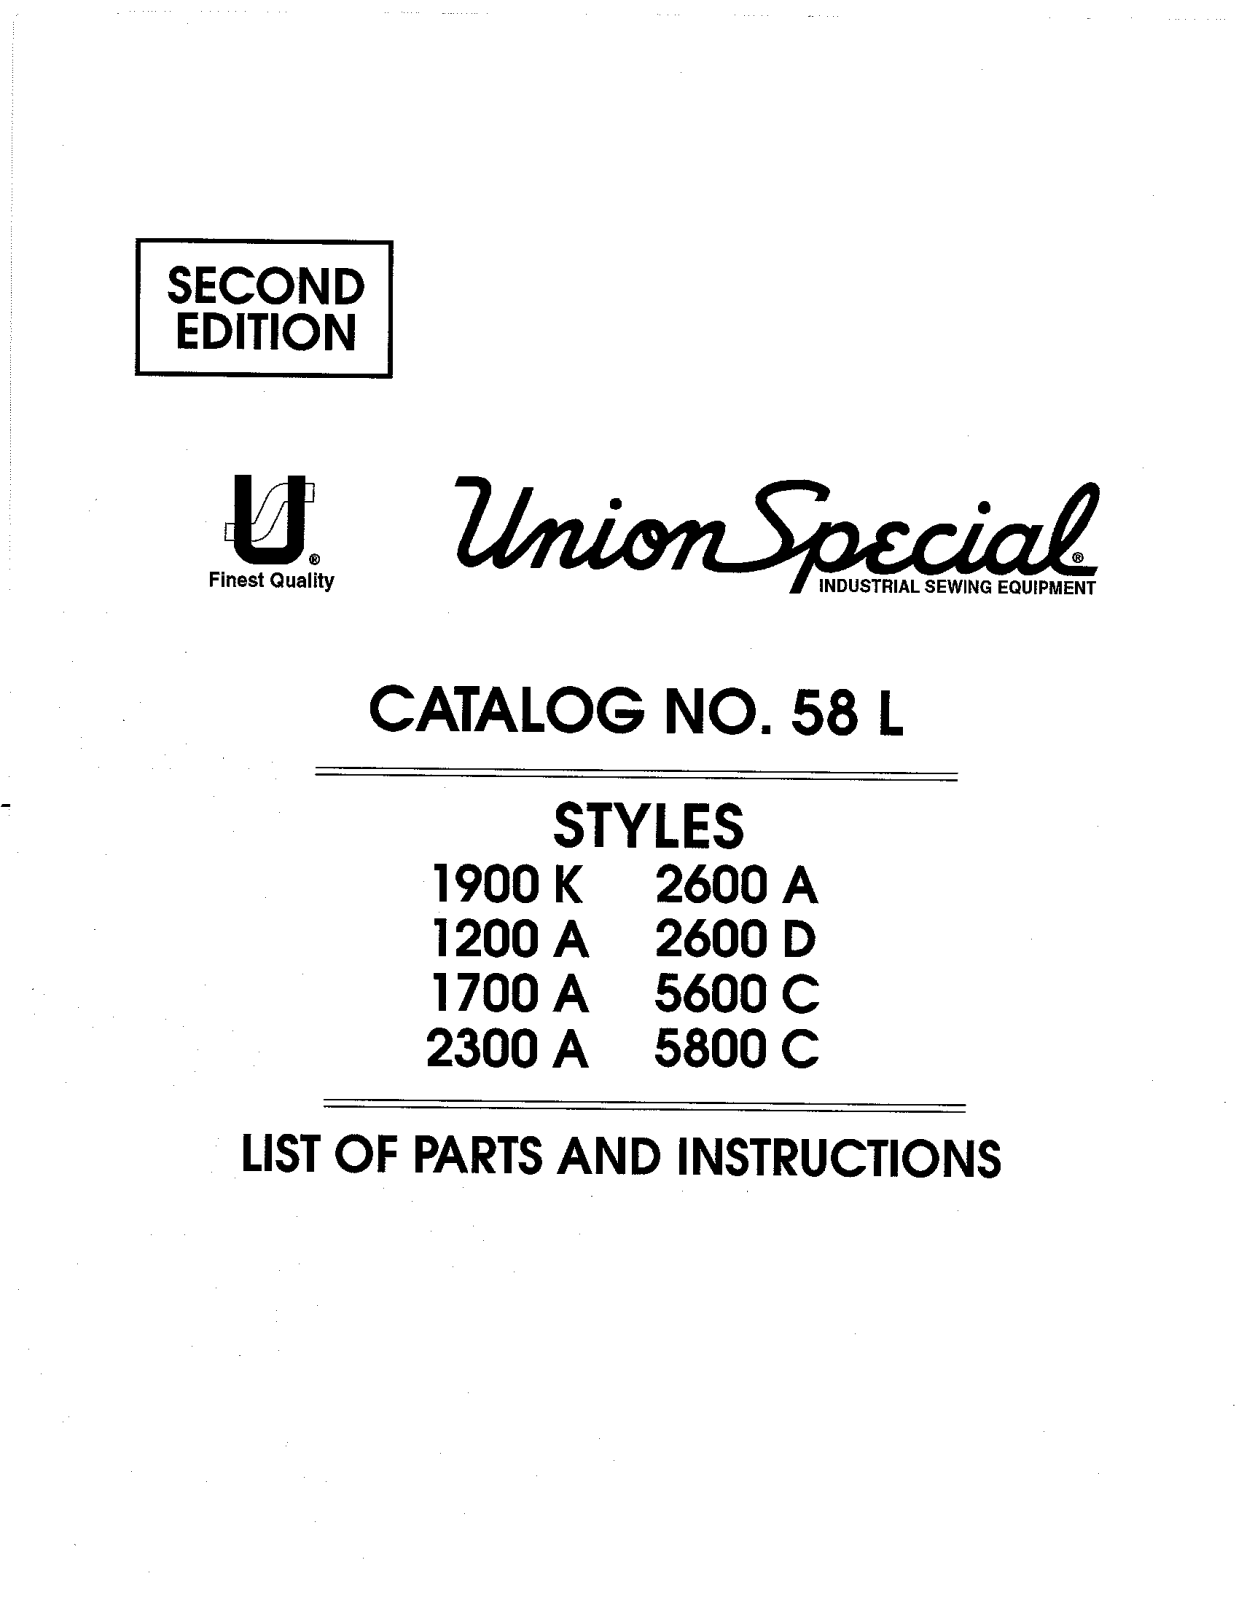 Union Special 1200A, 1700A, 1900K, 2300A, 2600A Parts List